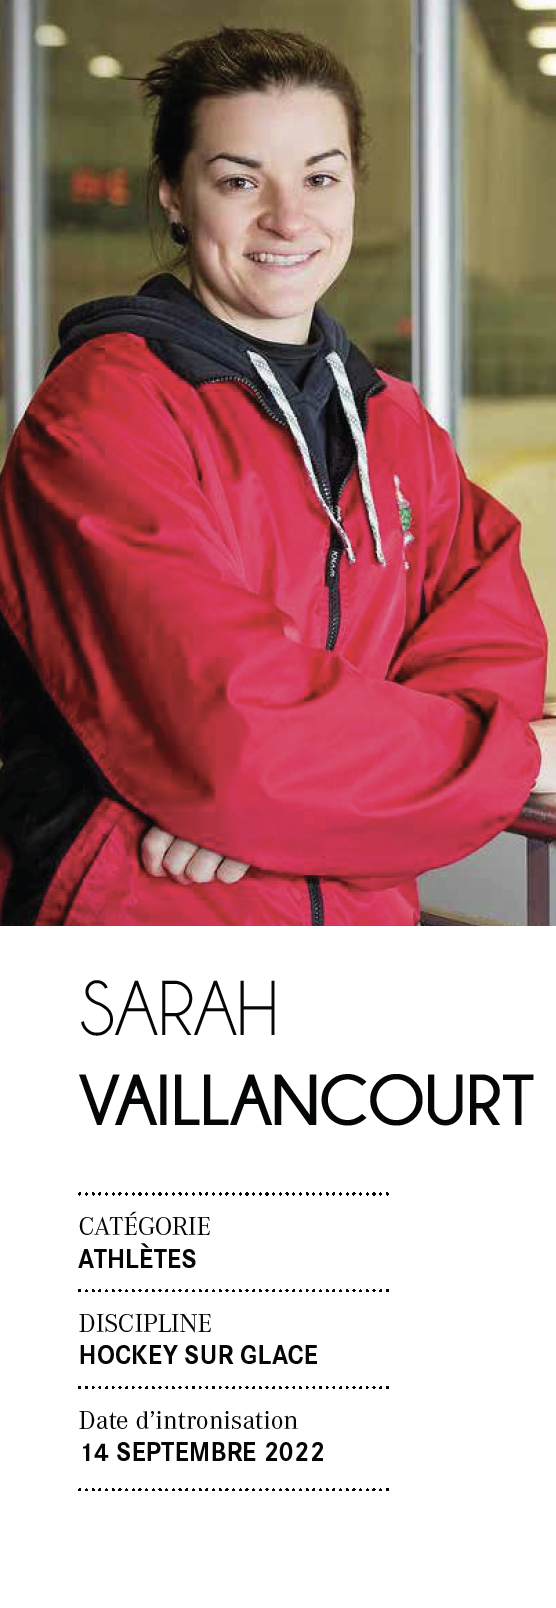 Sarah Vaillancourt